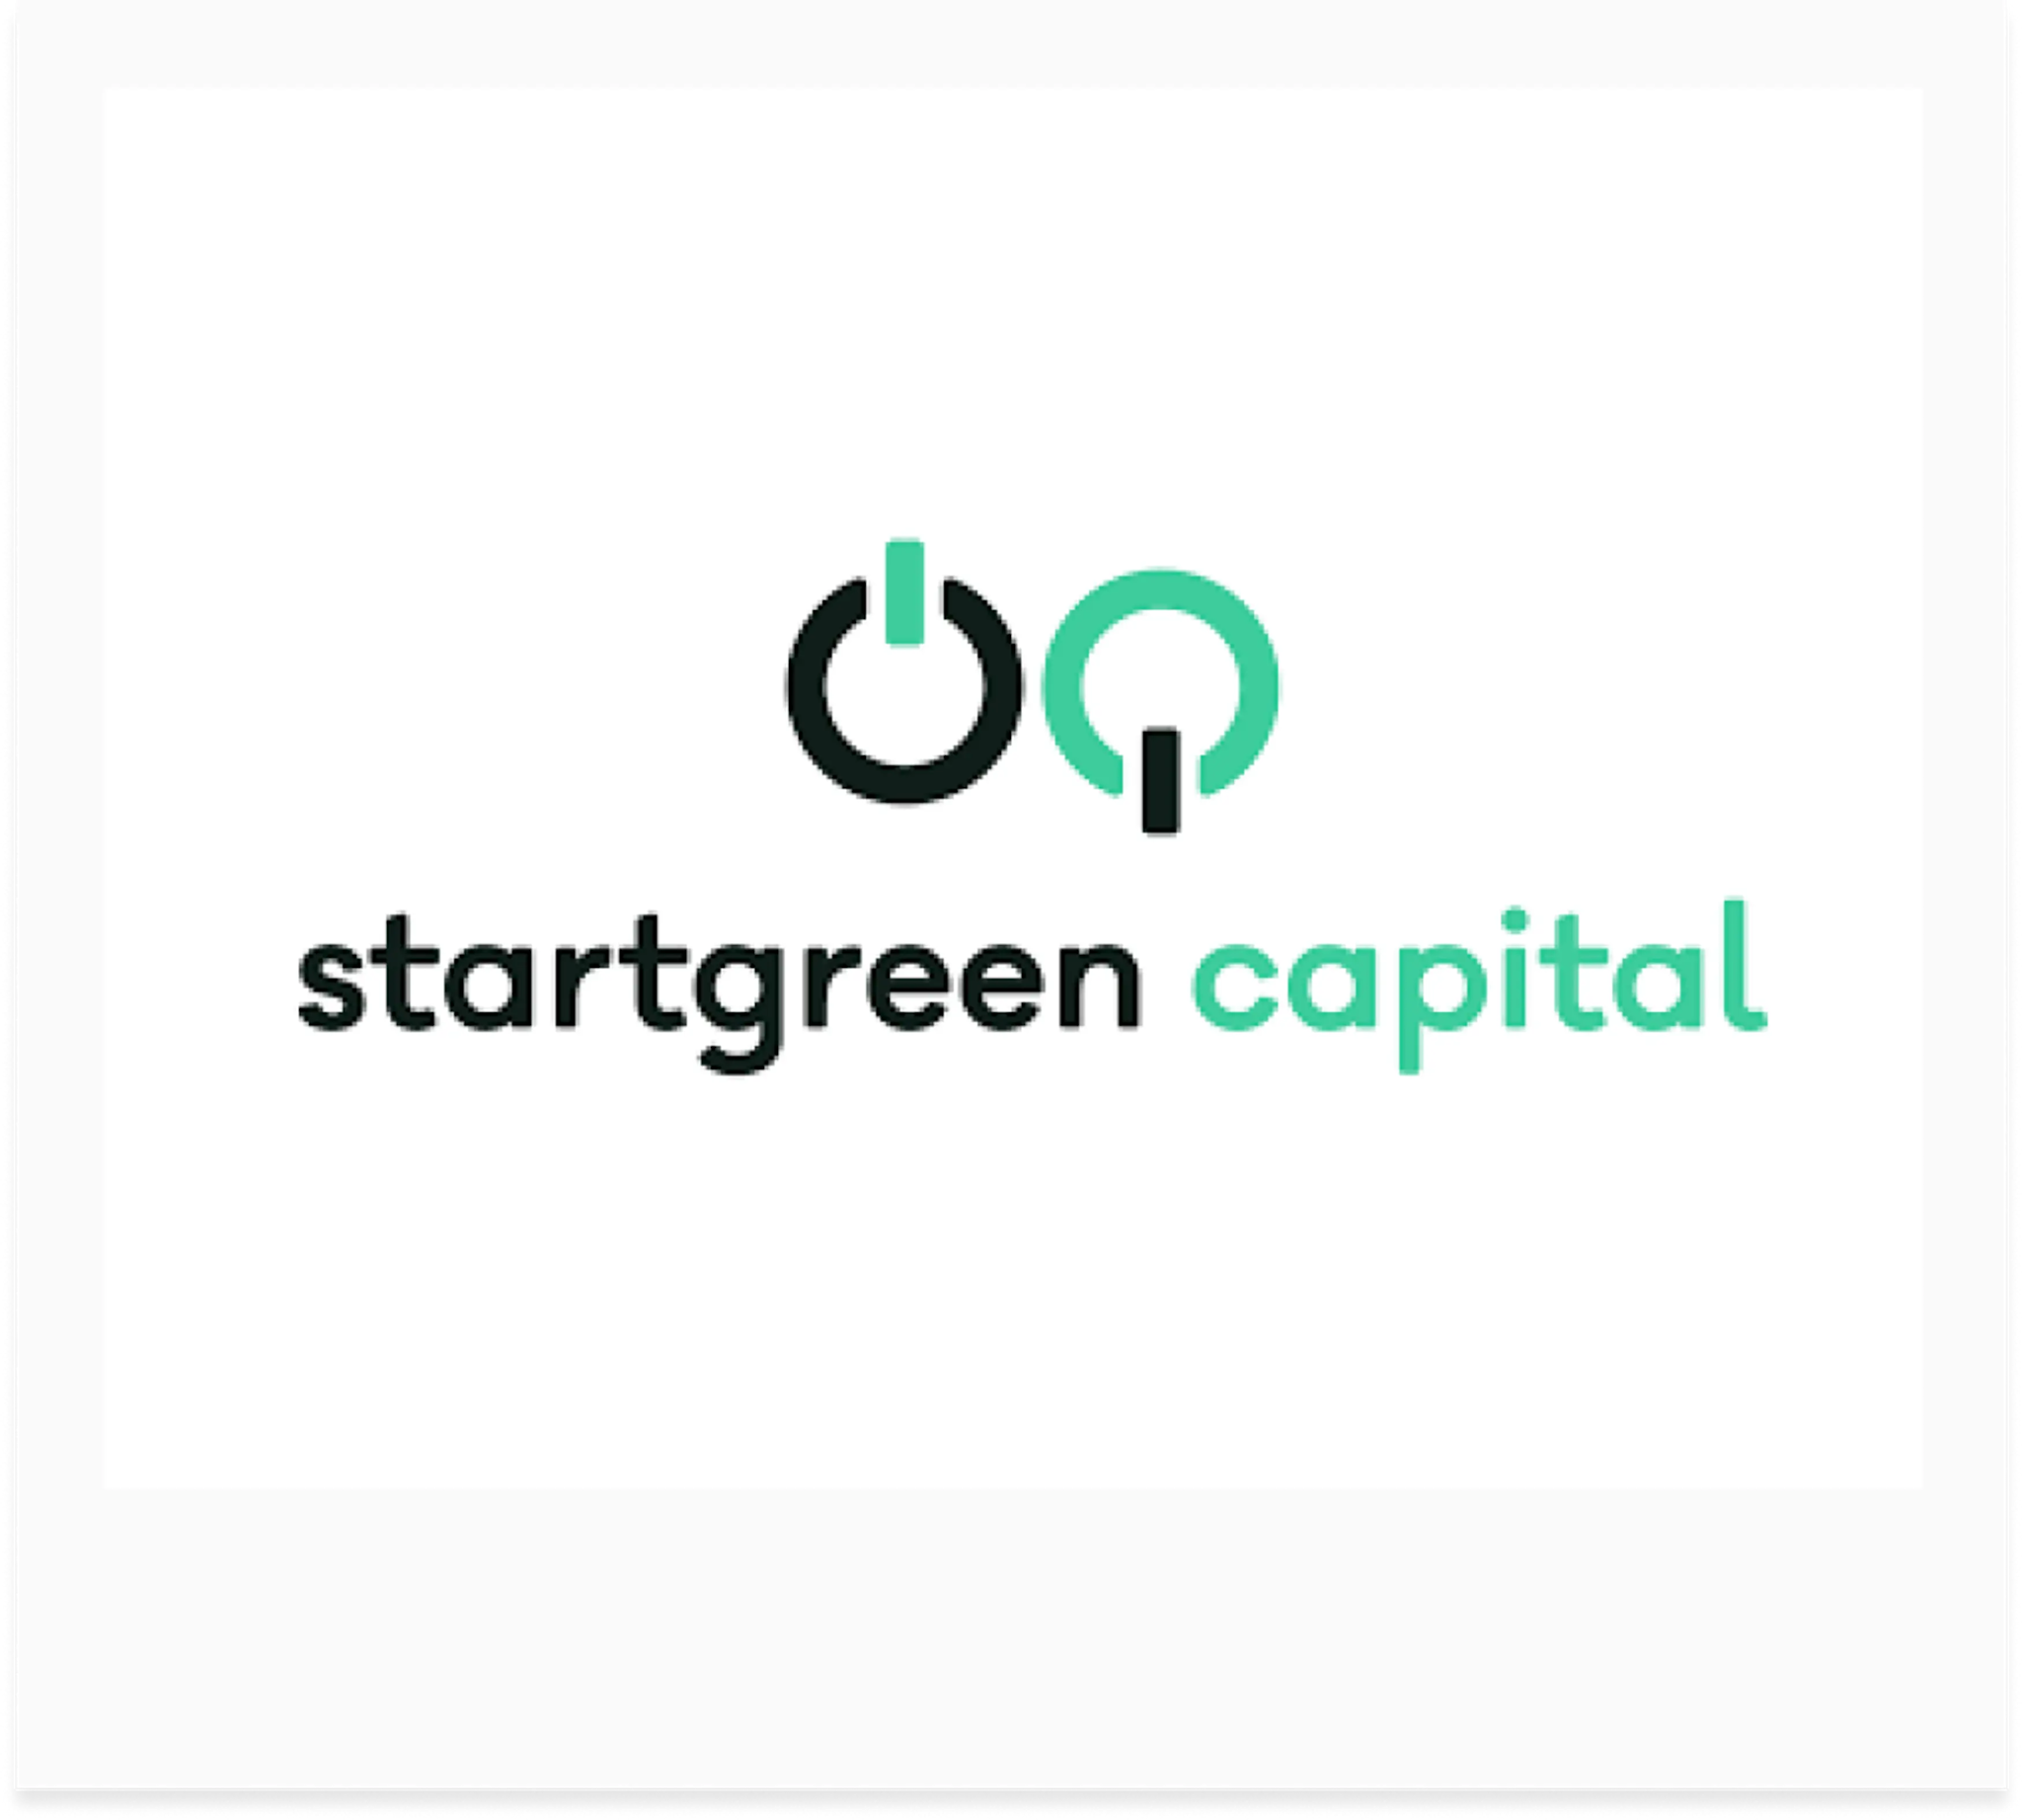 Startgreen capital